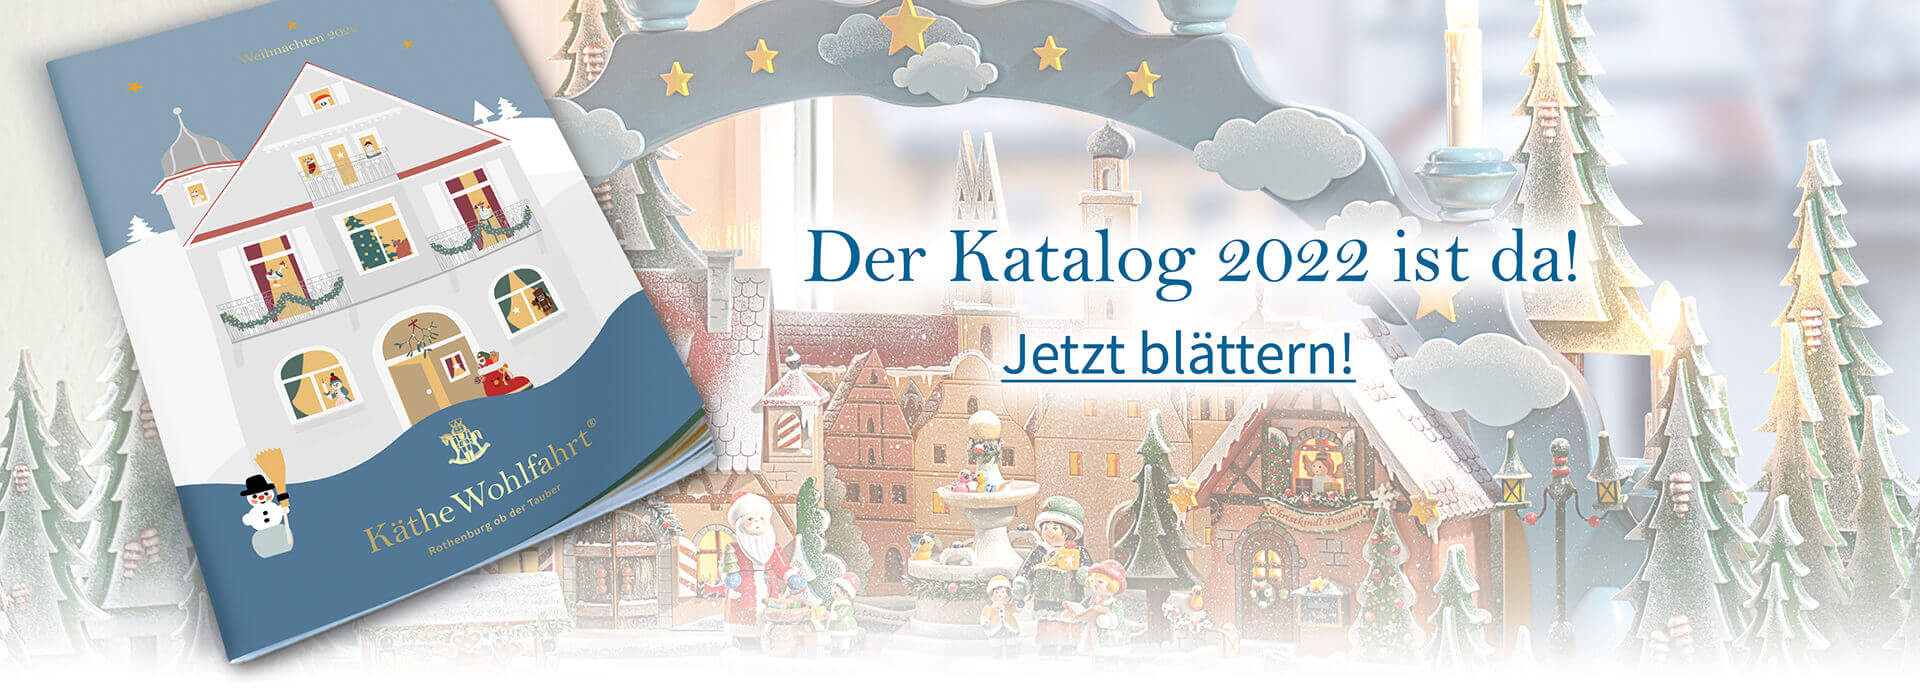 Katalog Weihnachten 2022 - Käthe Wohlfahrt